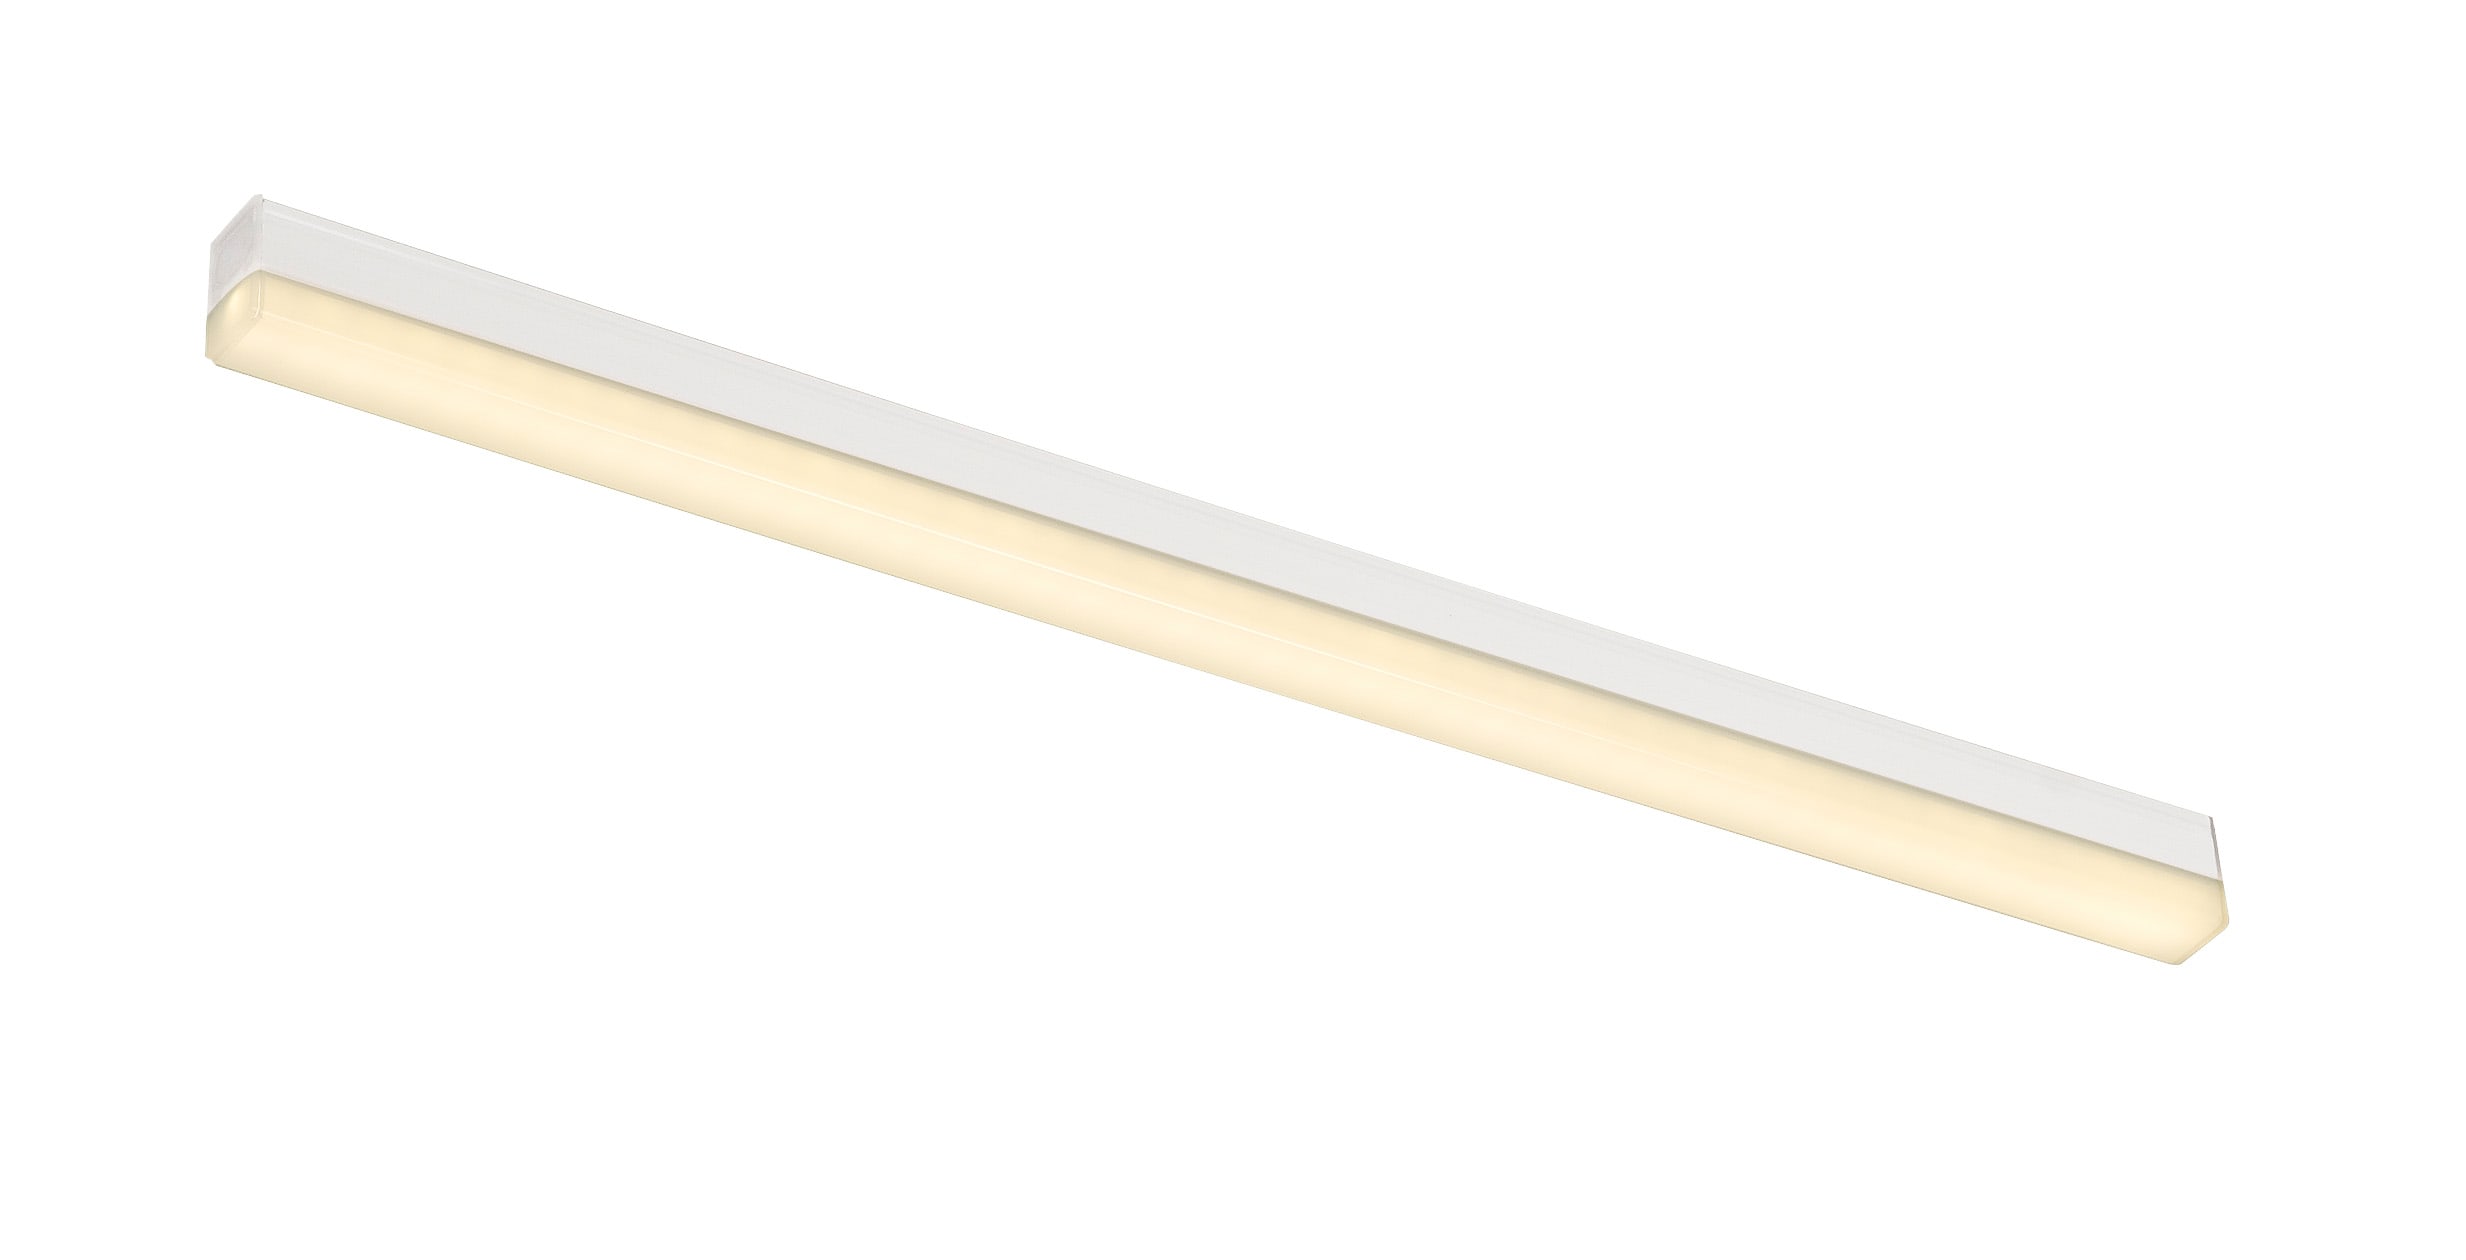 Slv. - BATTEN LED, reglette LED, interieur, 57,5 cm, blanc mat, LED, 8,1W, 3000K